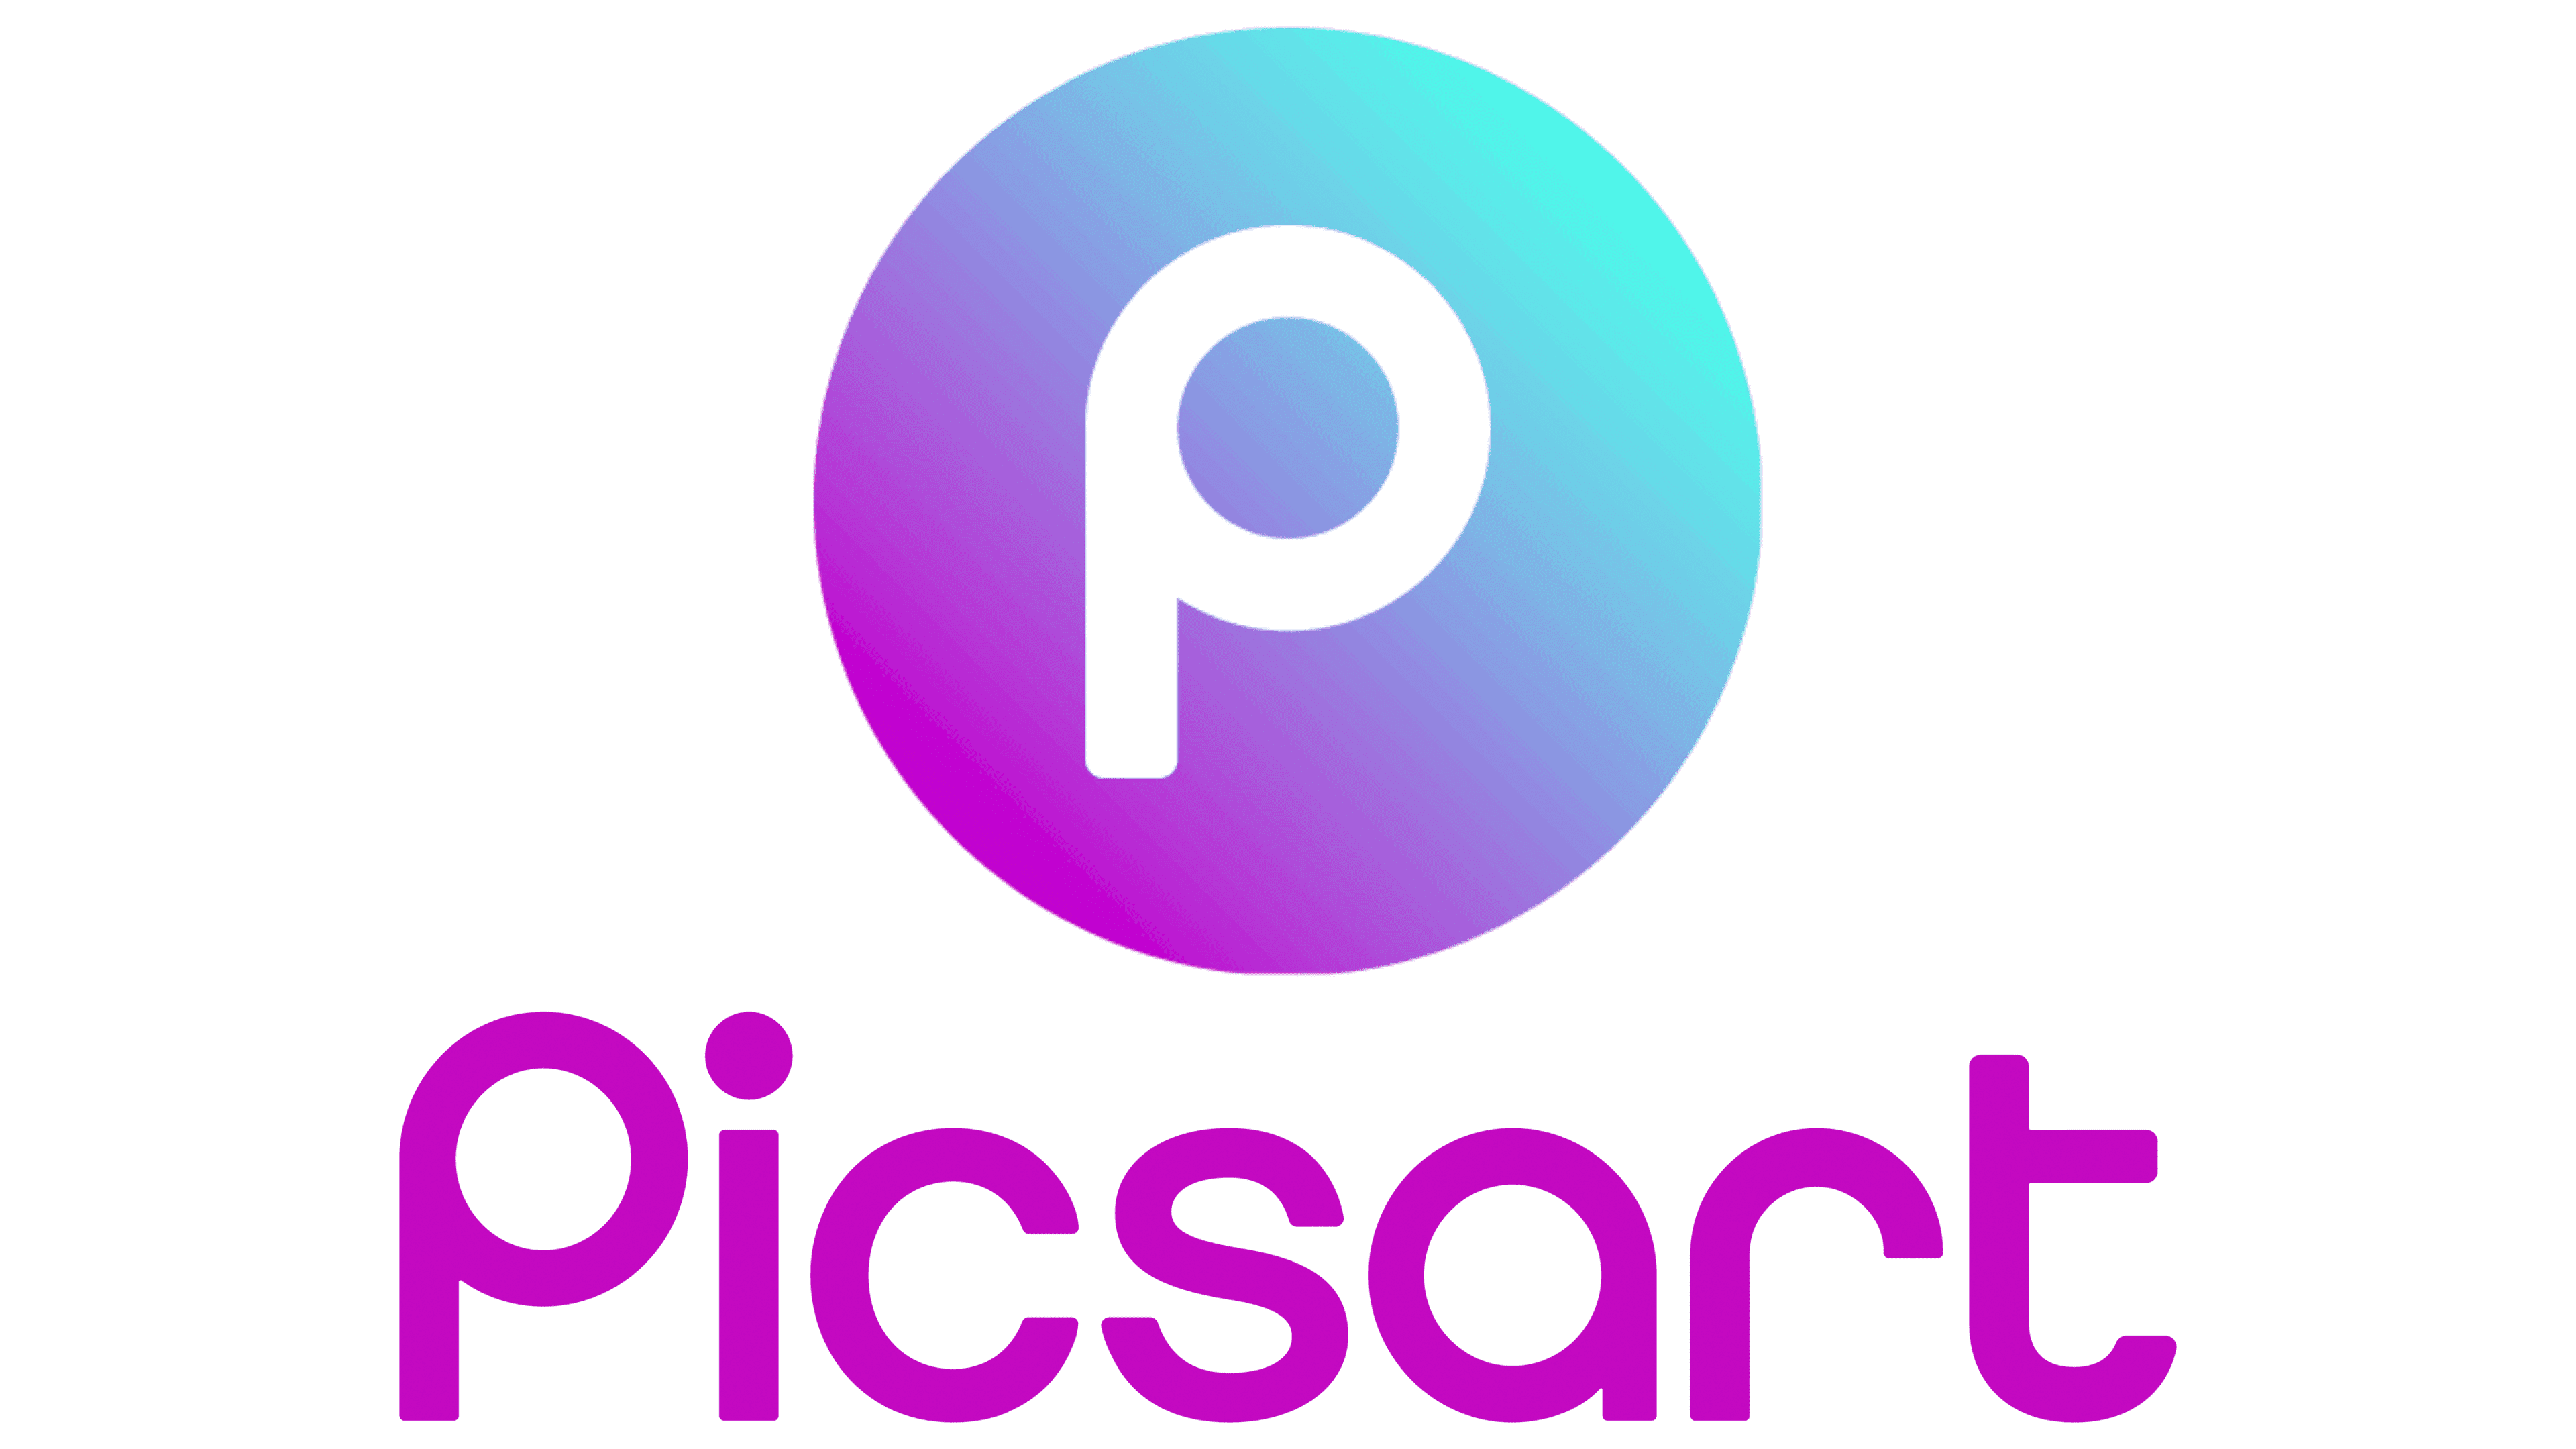 Png Picsart Download - Picsart Logo Png Hd - Free Transparent PNG Clipart  Images Download